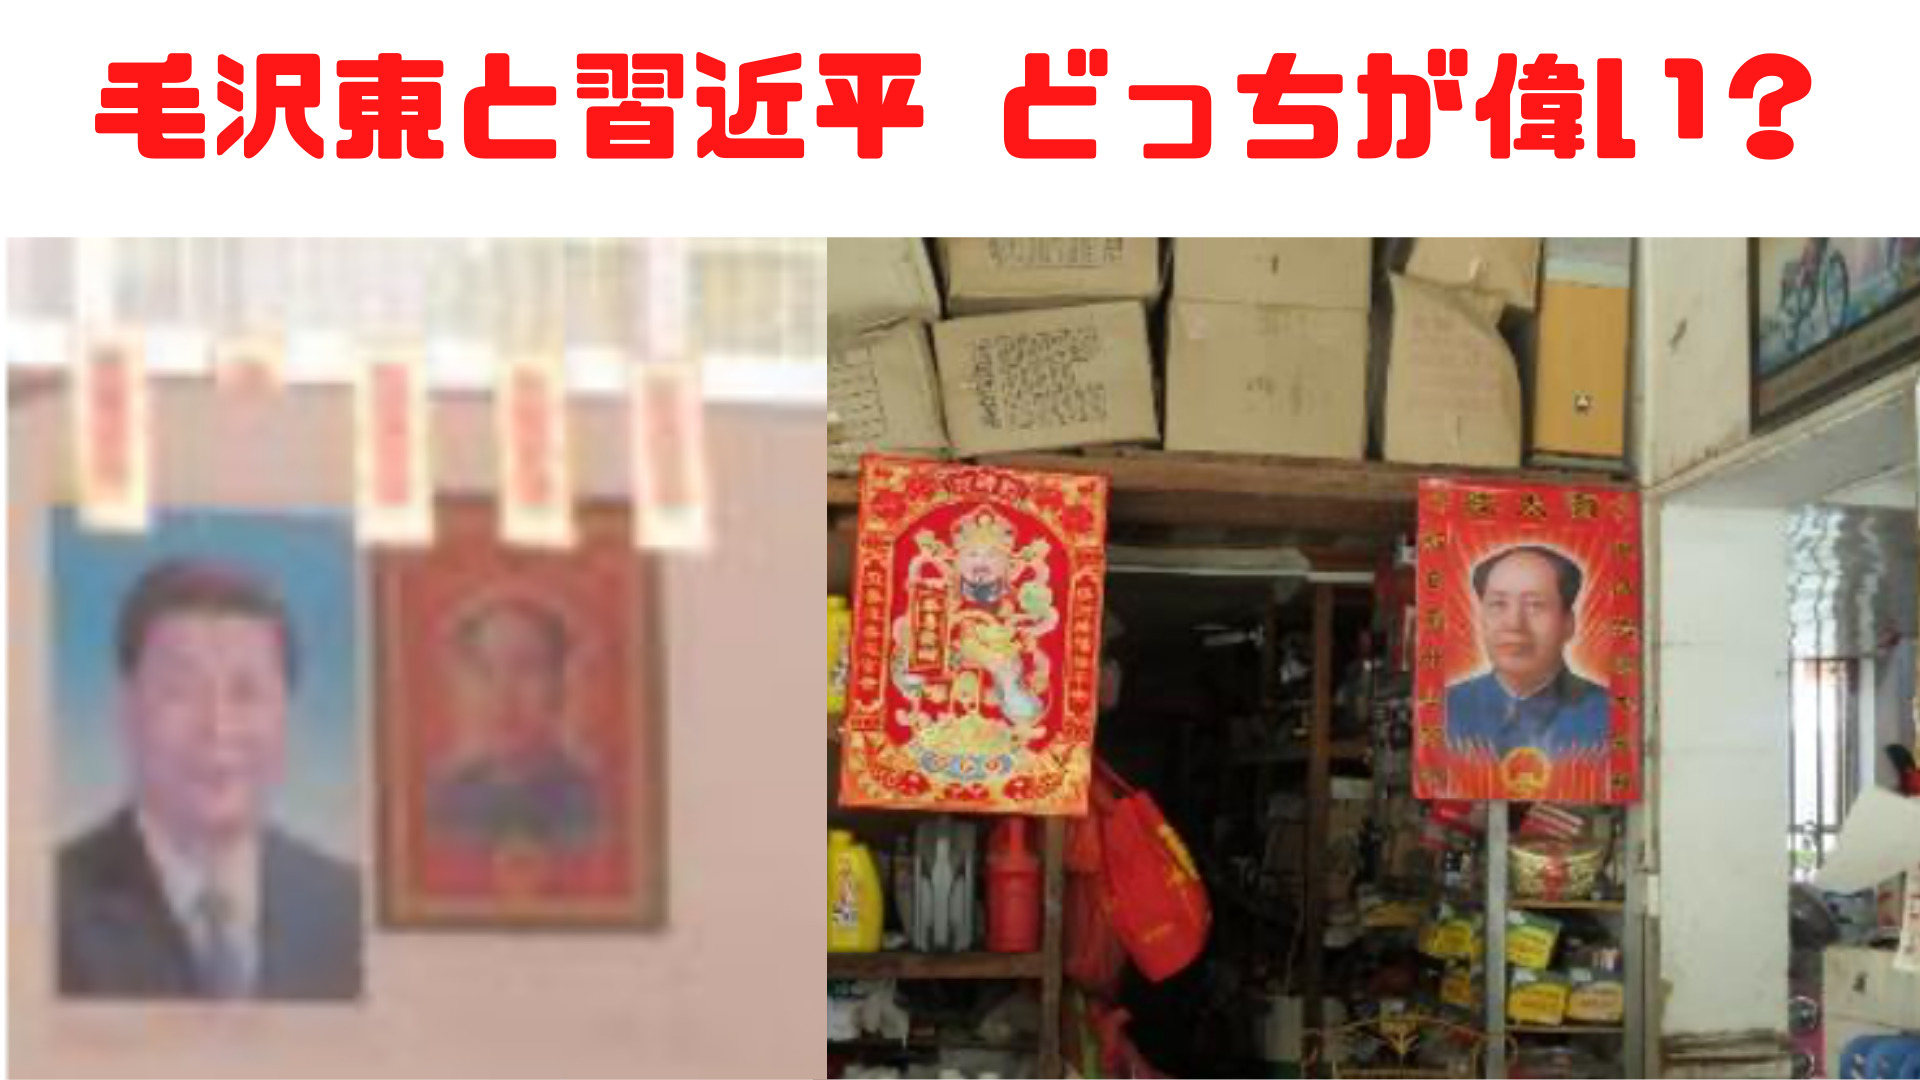 毛沢東と習近平のポスター写真。右側の写真は神と同等に扱われる毛沢東である。